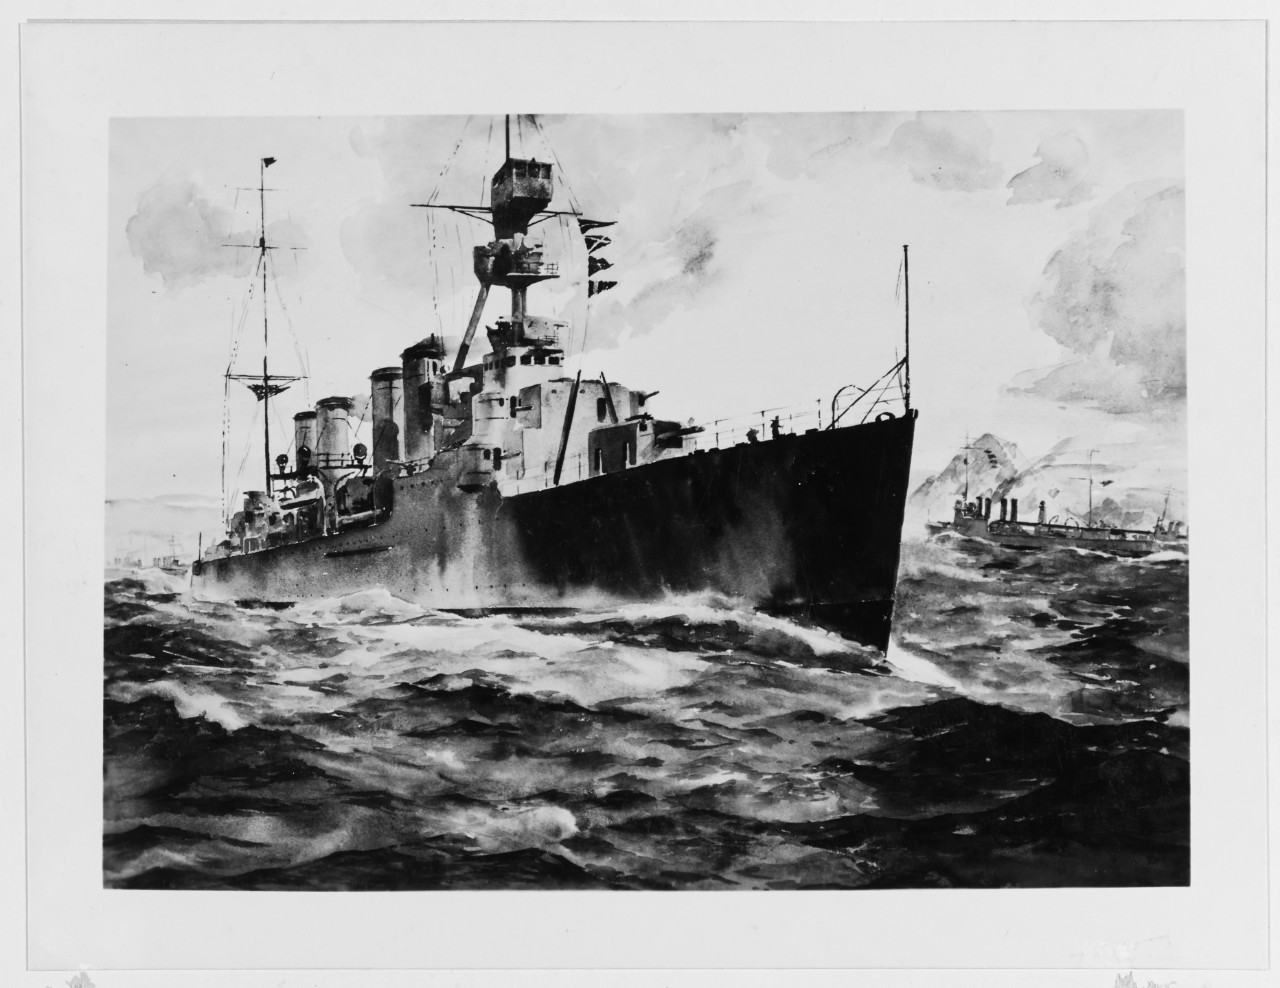 USS RALEIGH (CL-7)